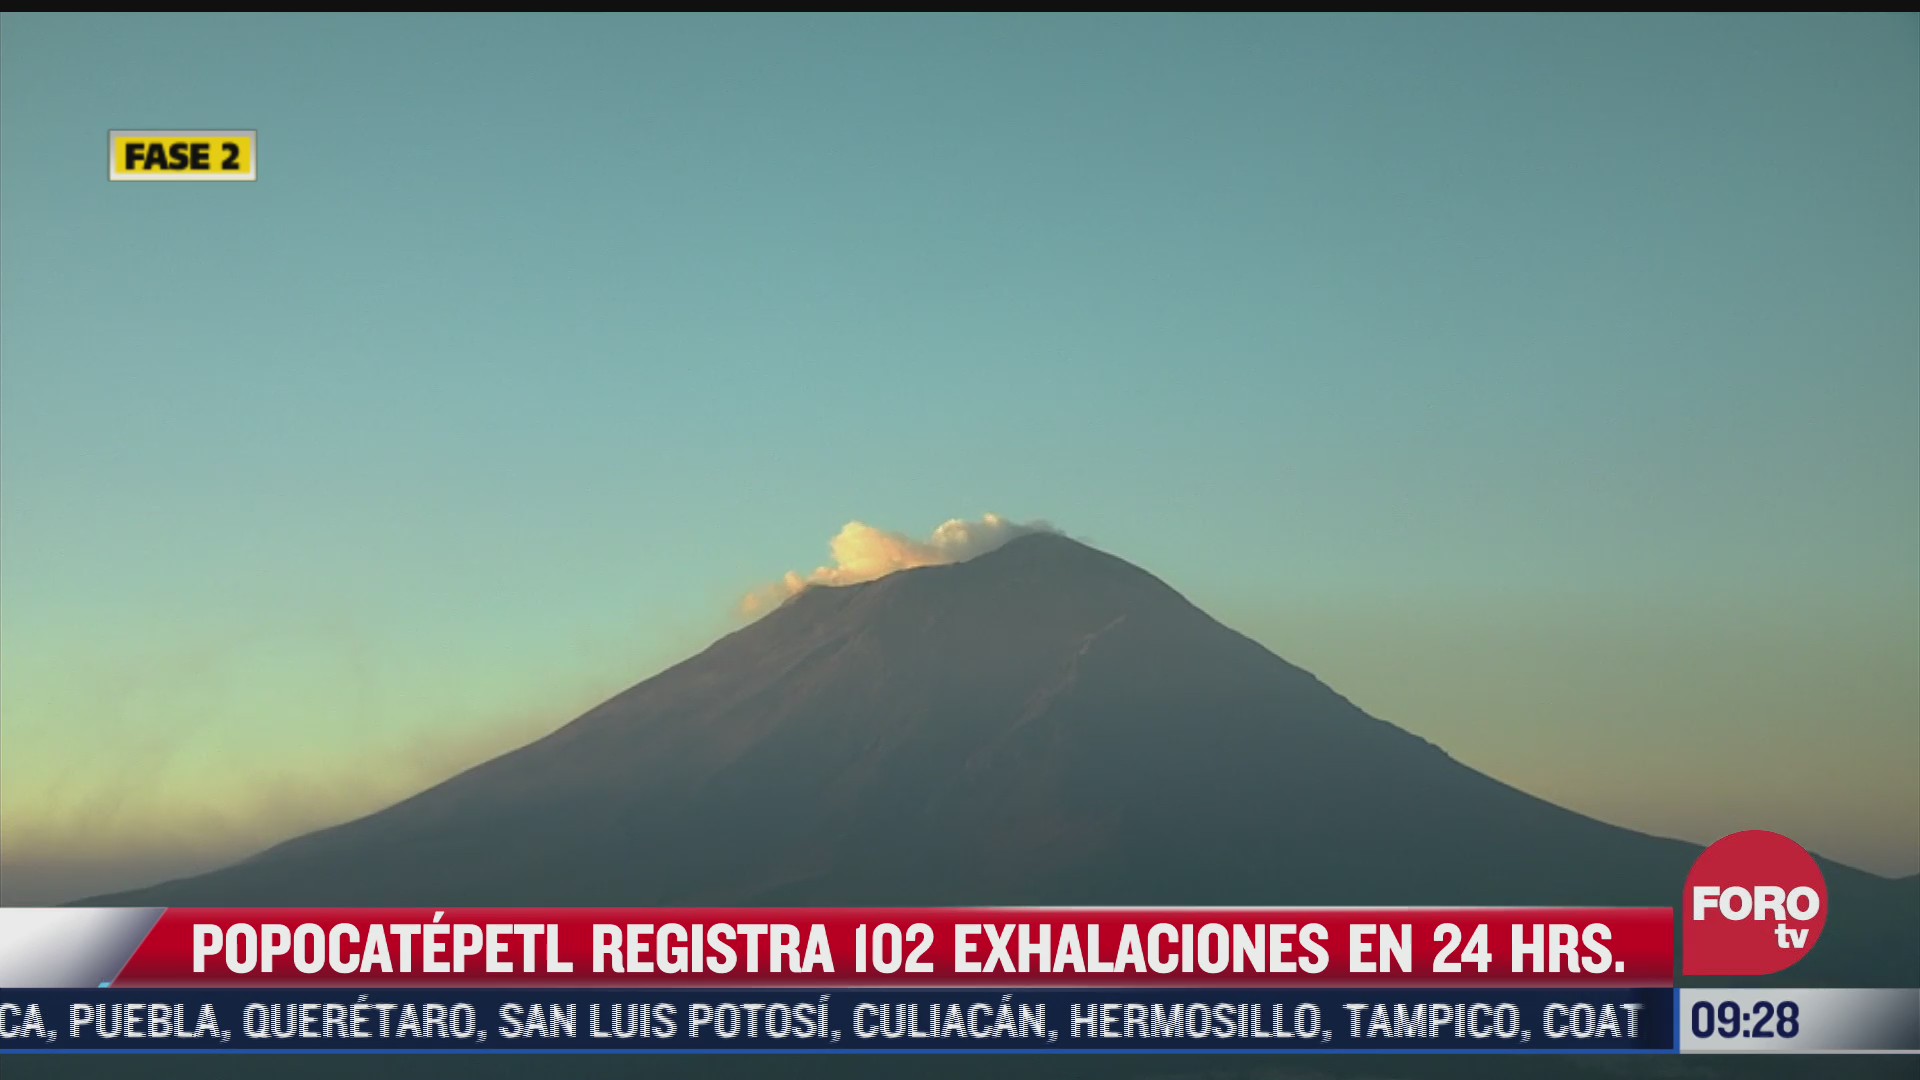 volcan popocatepetl registra 102 exhalaciones en 24 horas